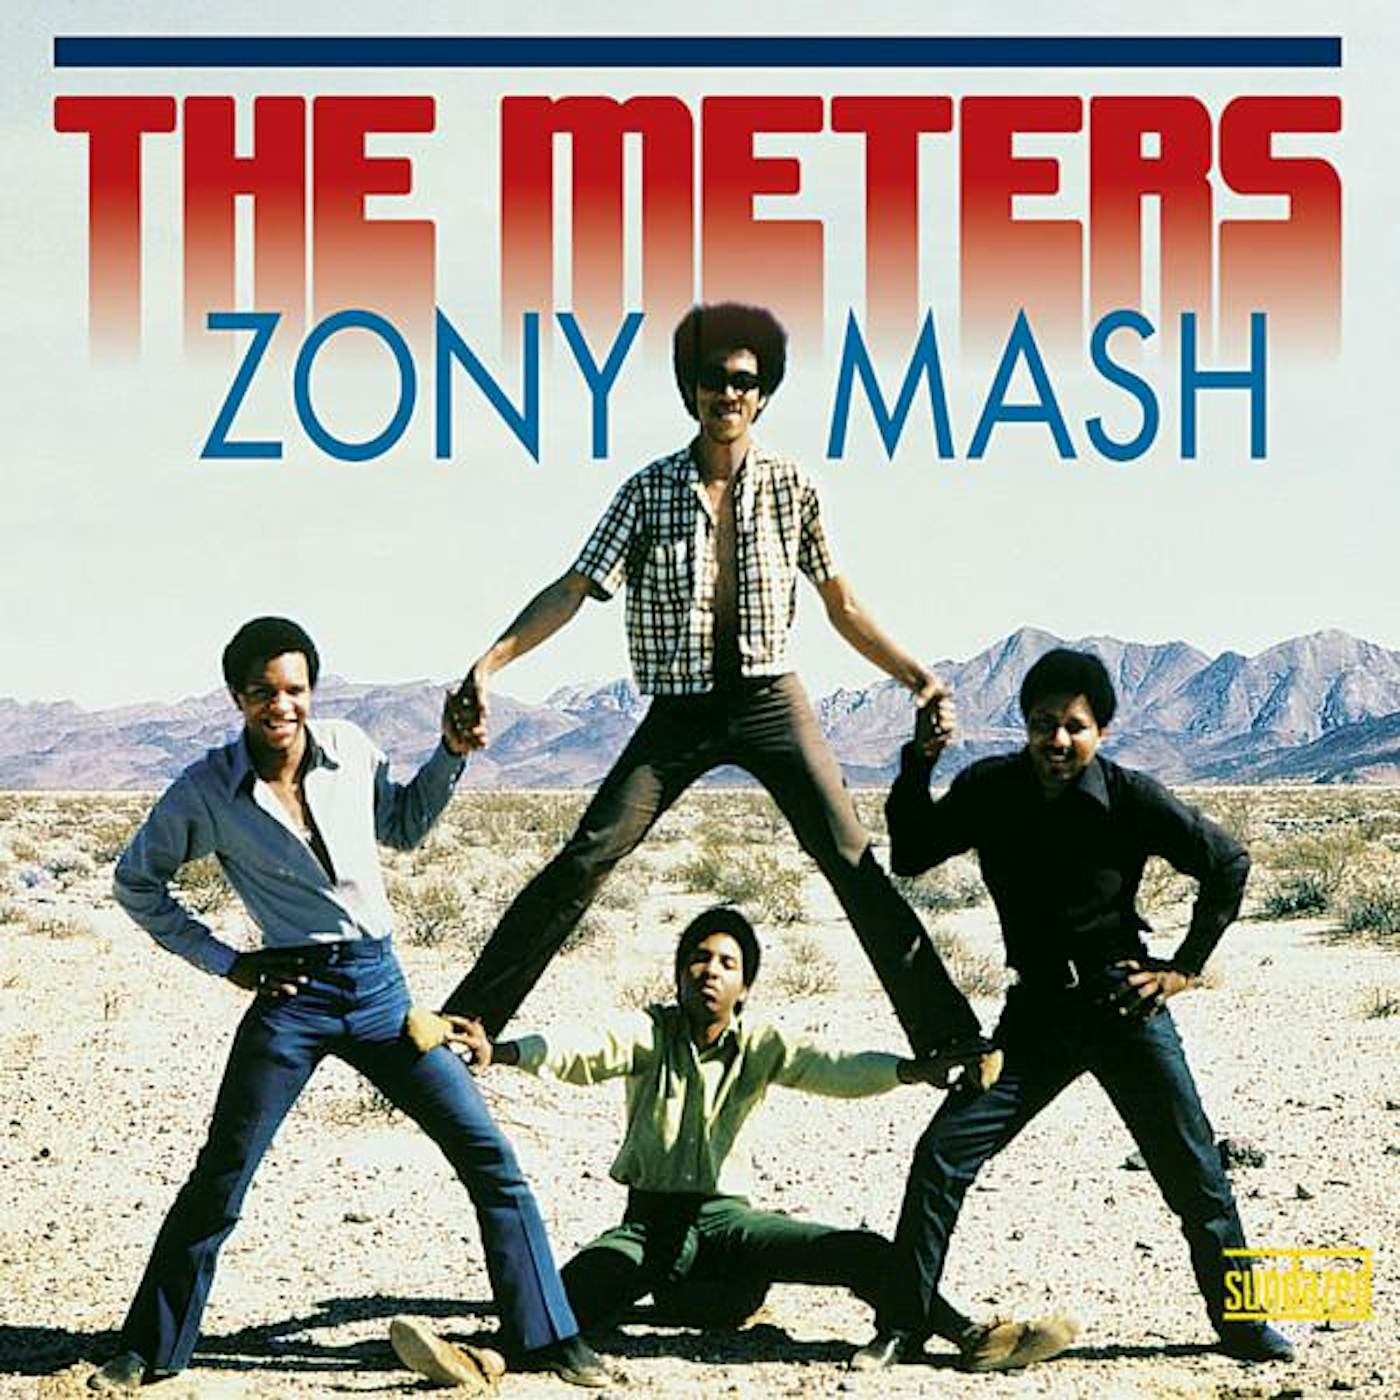 The Meters ZONY MASH (BLUE VINYL) Vinyl Record